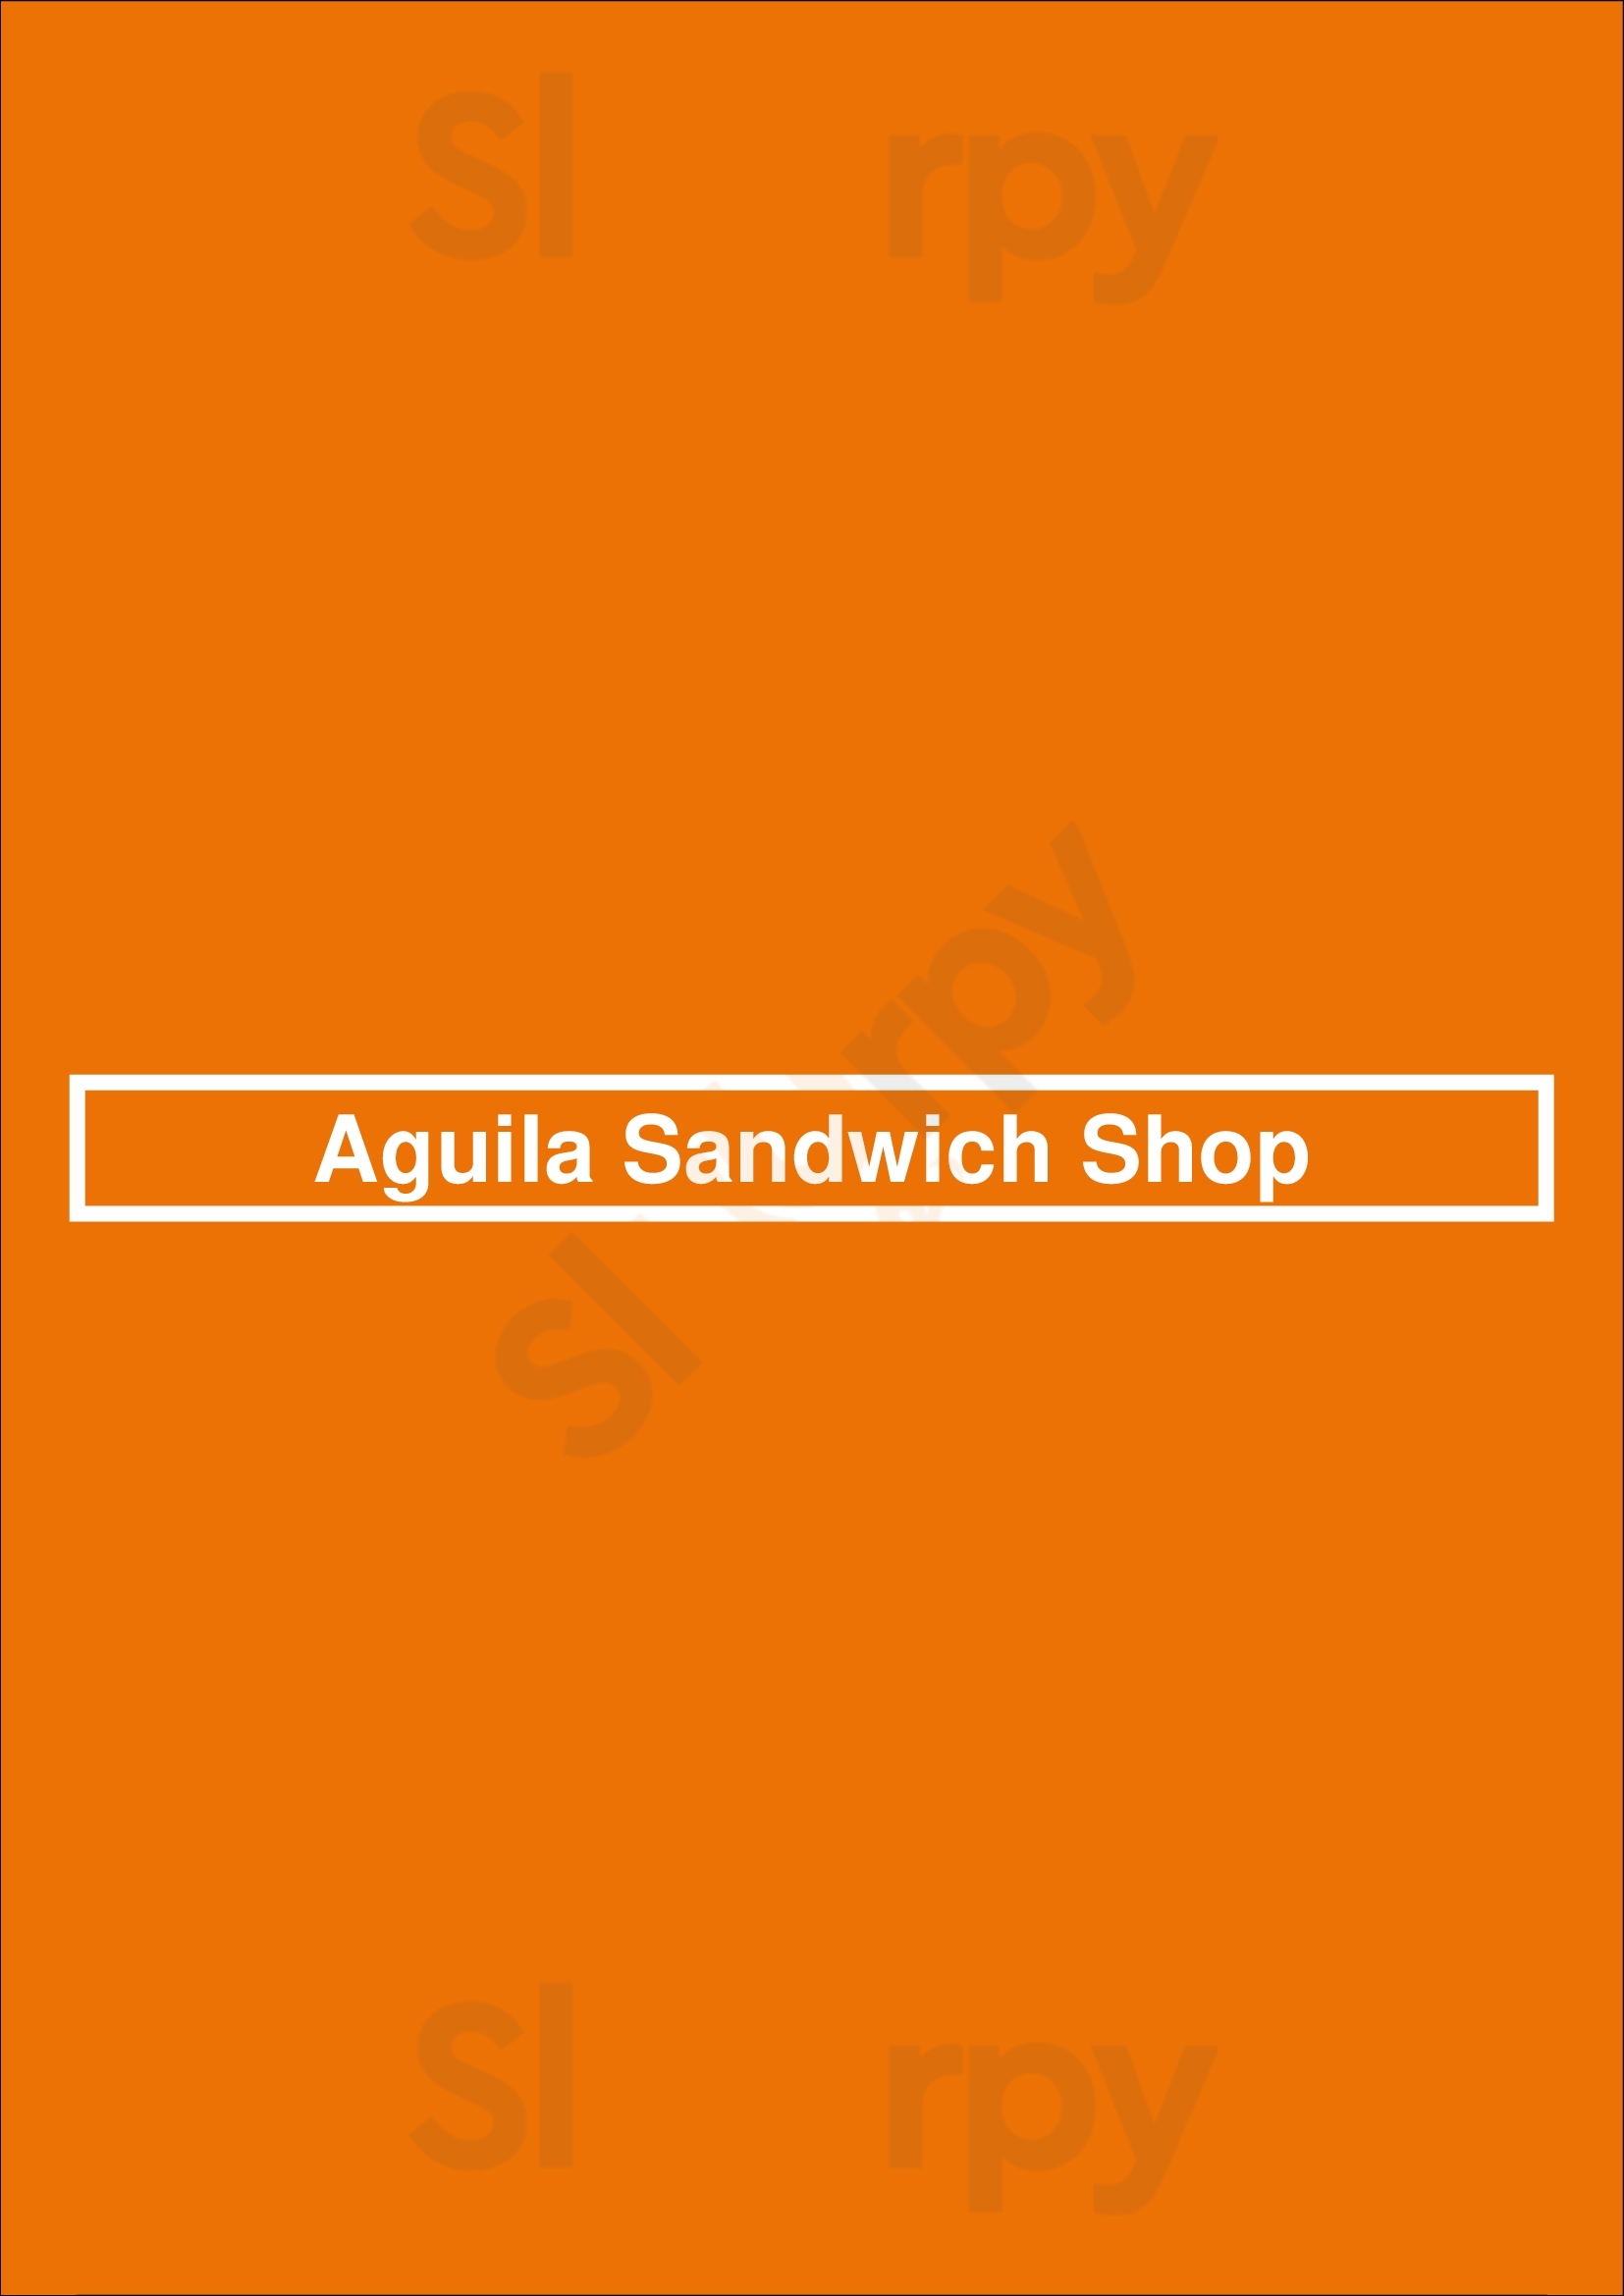 Aguila Sandwich Shop Tampa Menu - 1